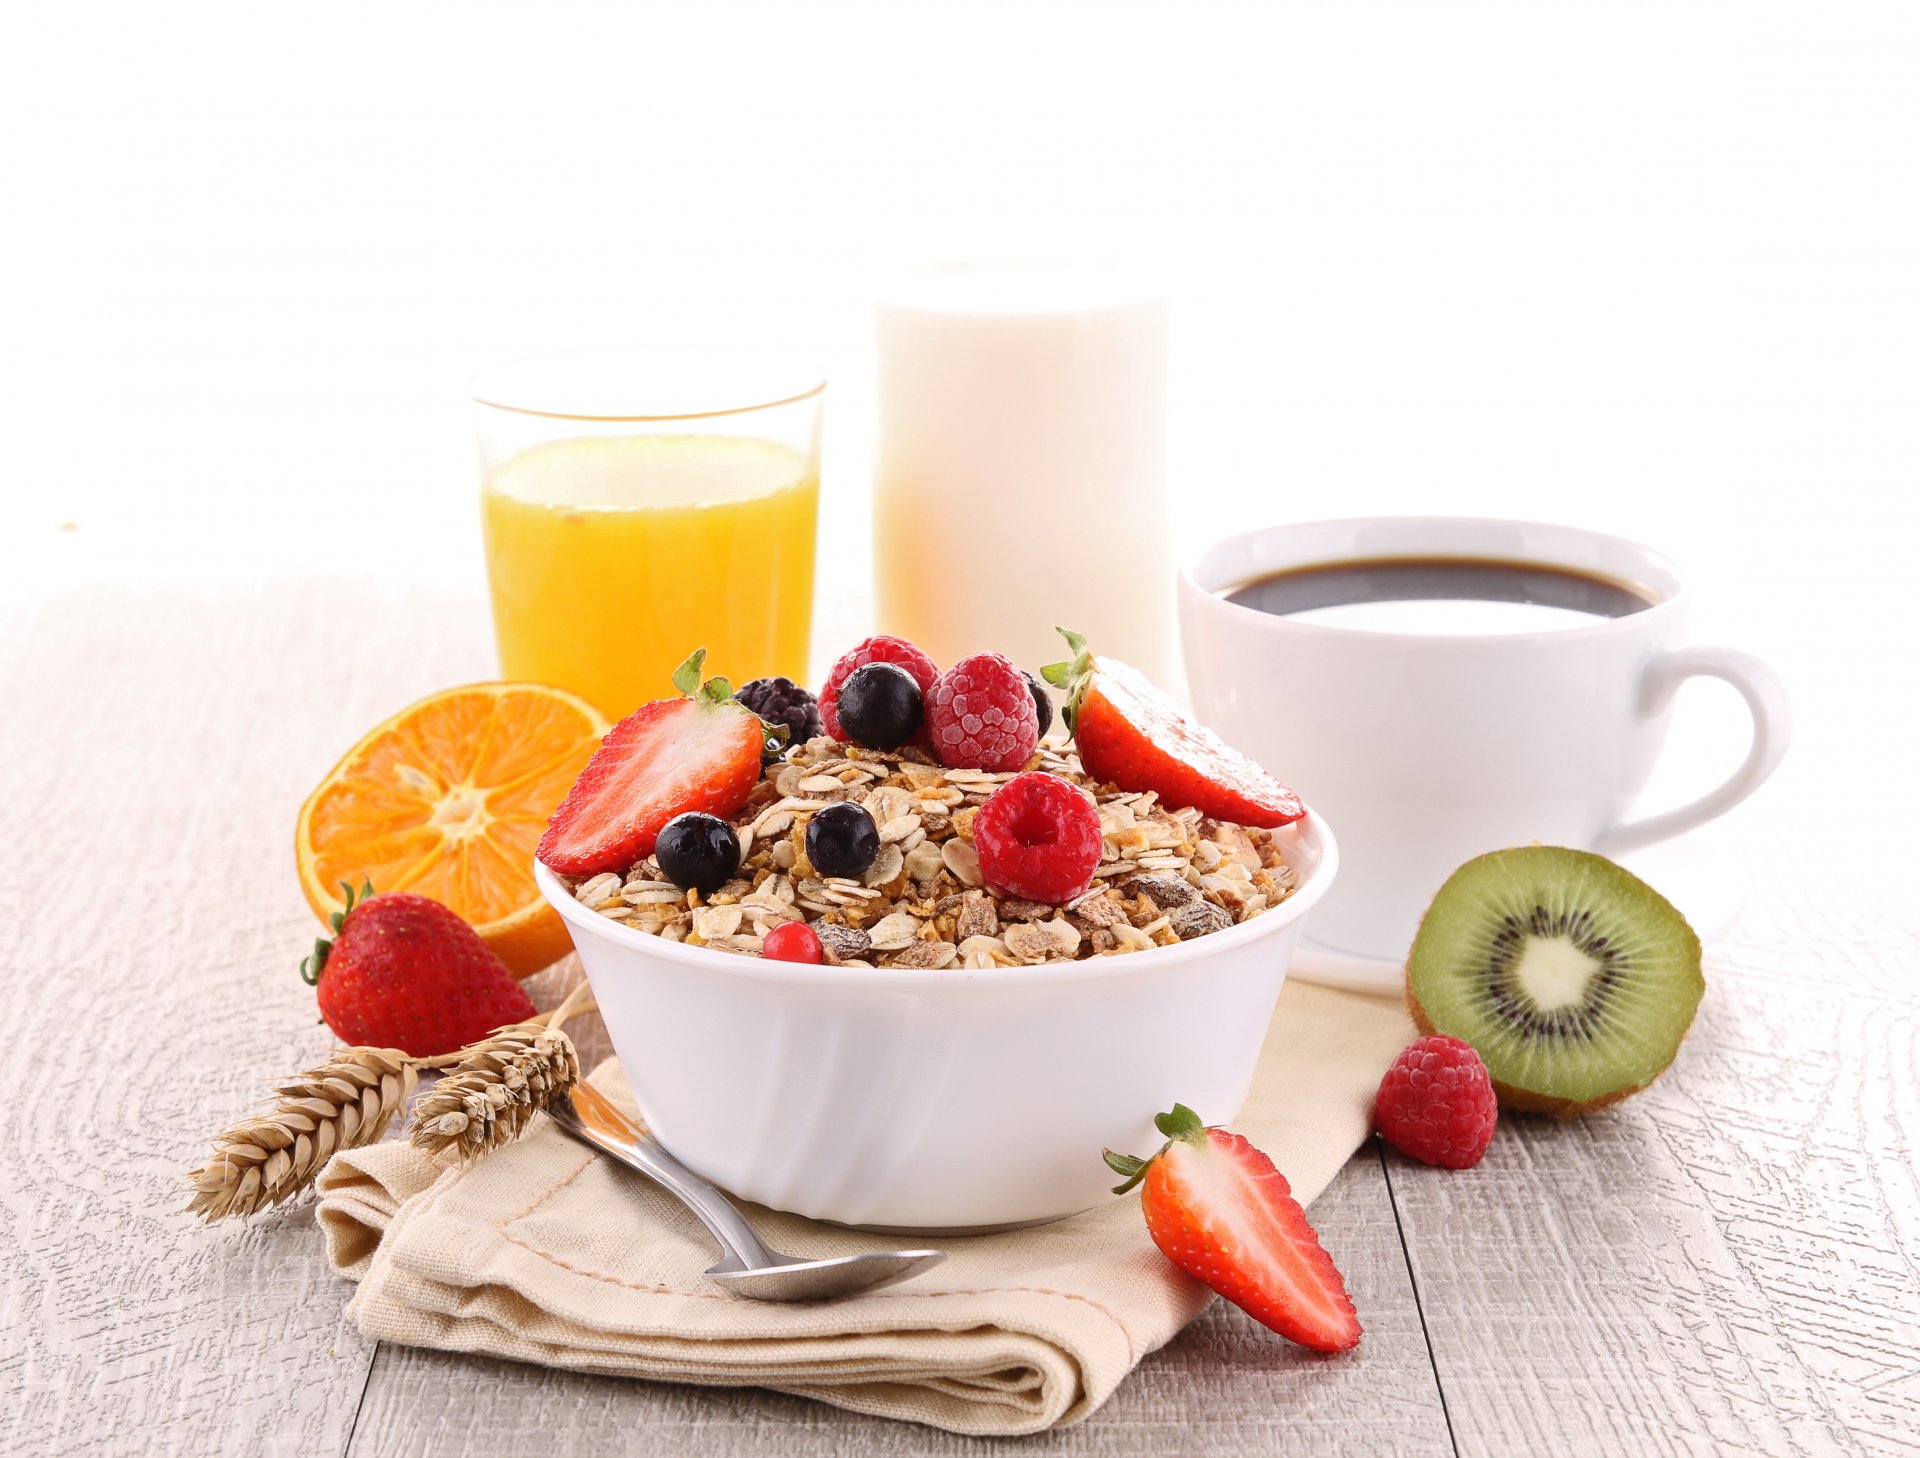 Desayuno vegano alto en proteinas